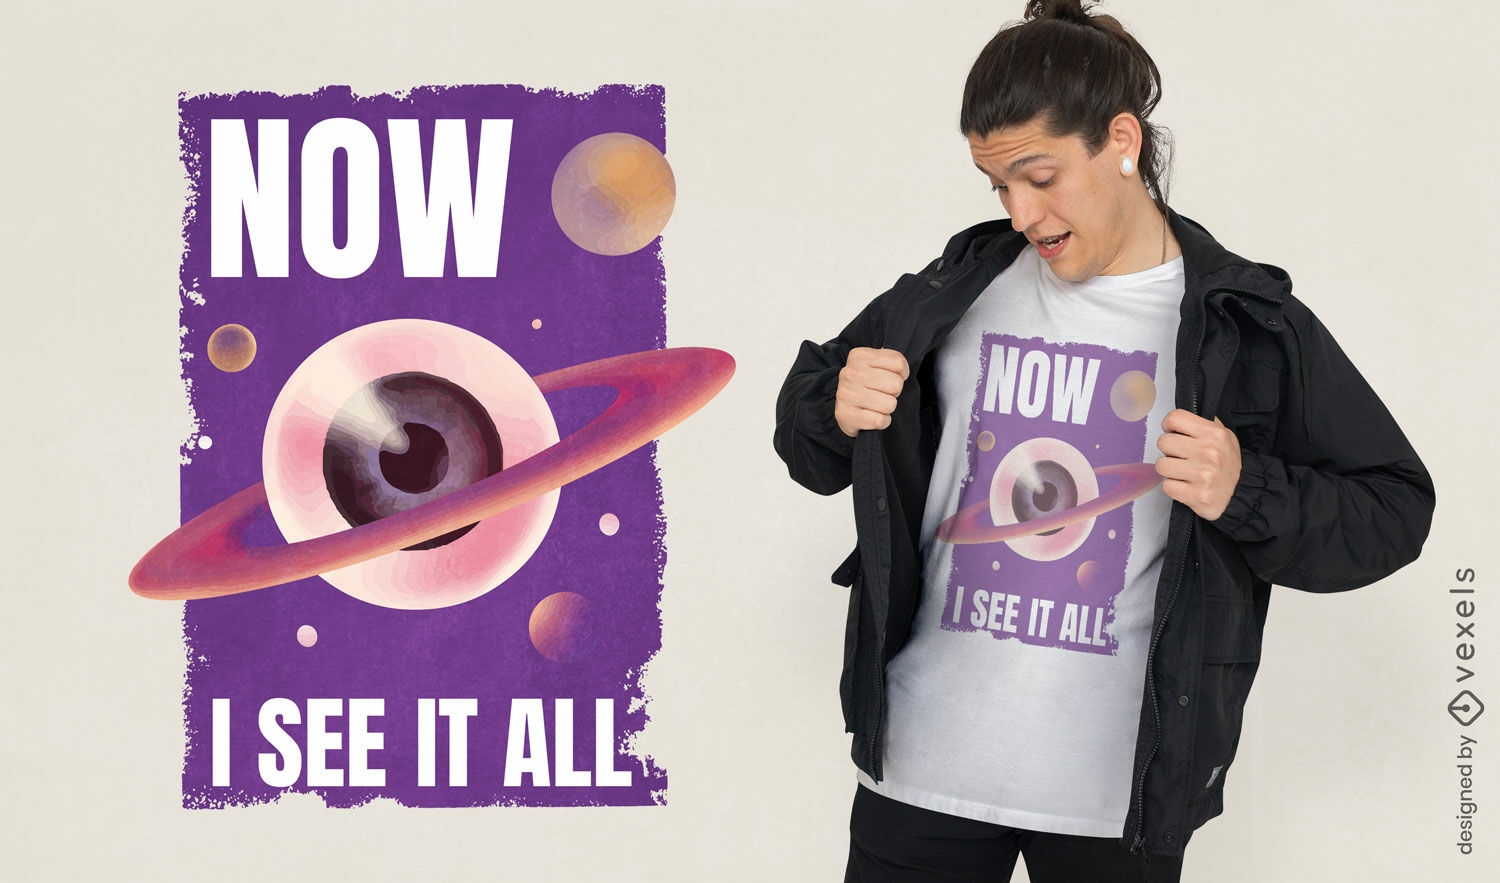 Dise?o de camiseta espiritual del planeta ojo.